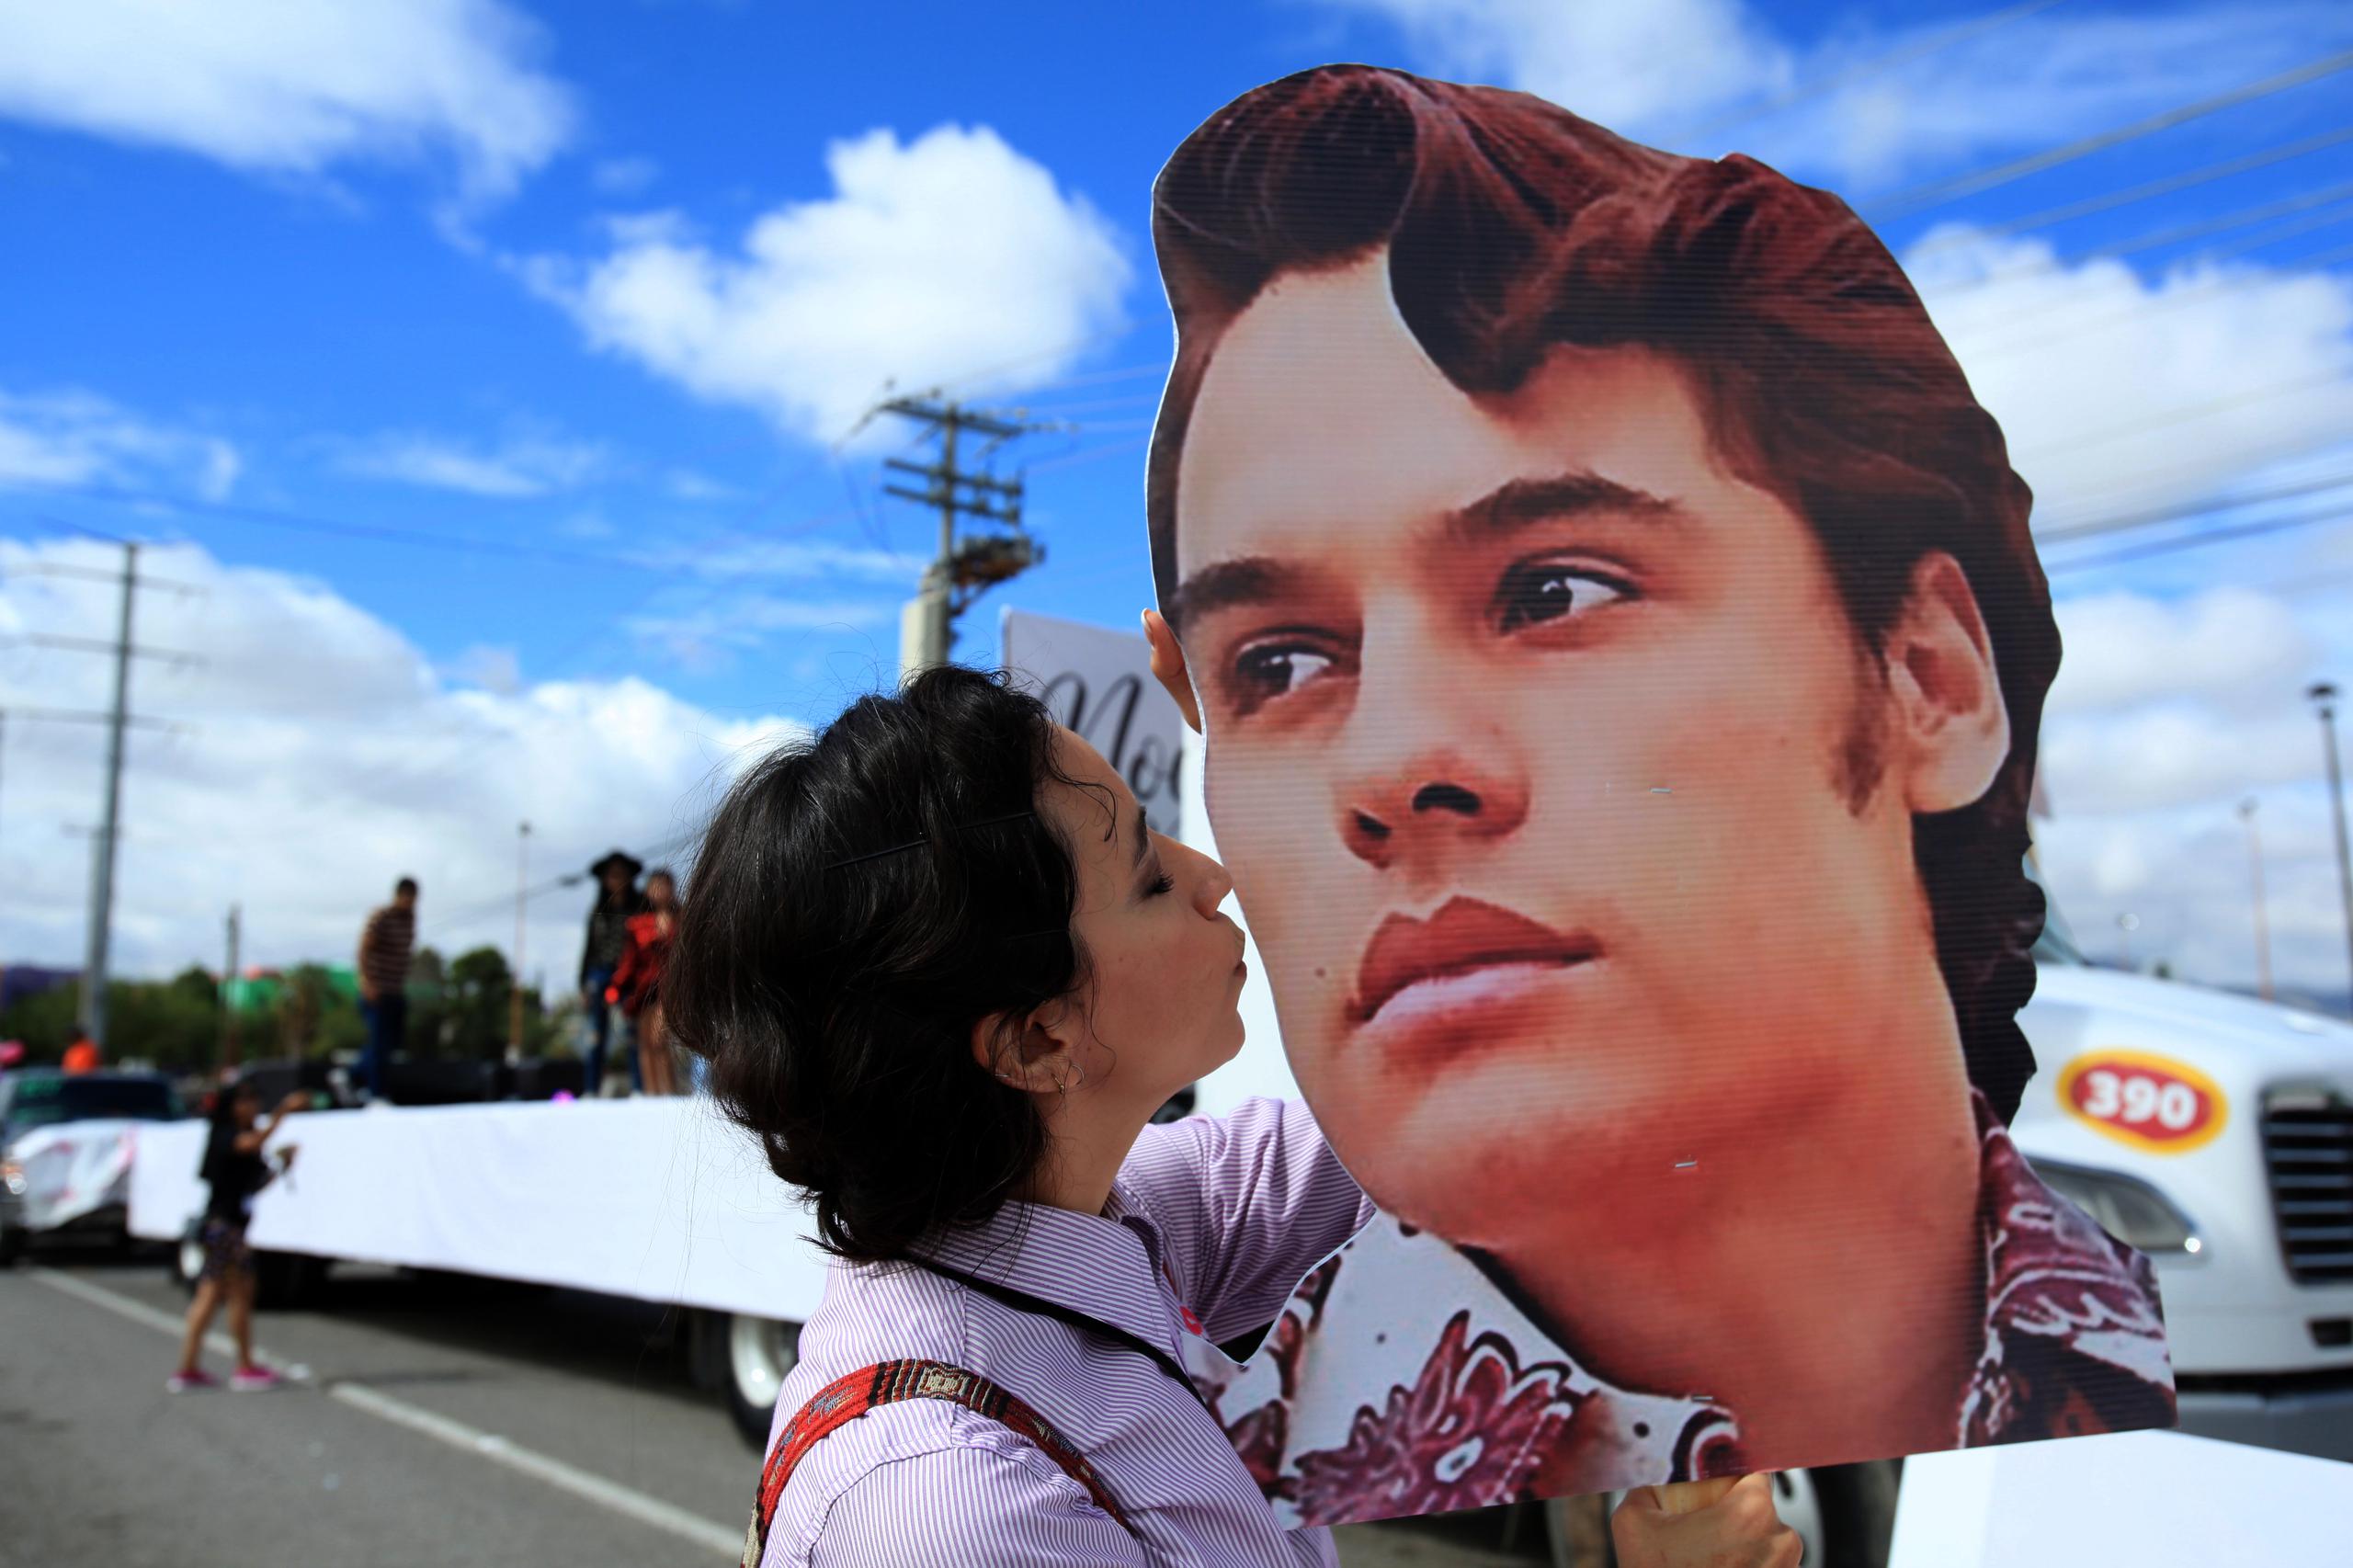 Ciudadanos en Ciudad Juárez rinden homenaje con un desfile alegórico al fallecido cantante mexicano Juan Gabriel previo a su sexto aniversario luctuoso.